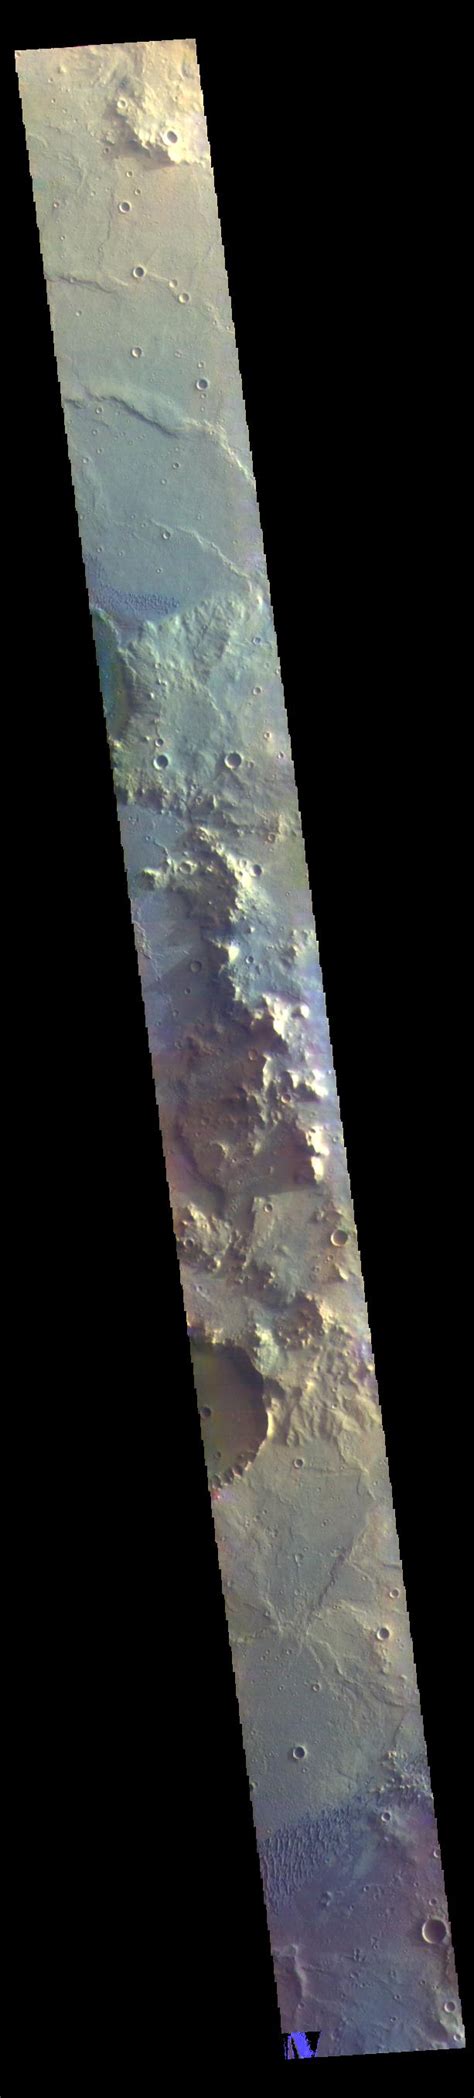 herschel crater false color nasa mars exploration